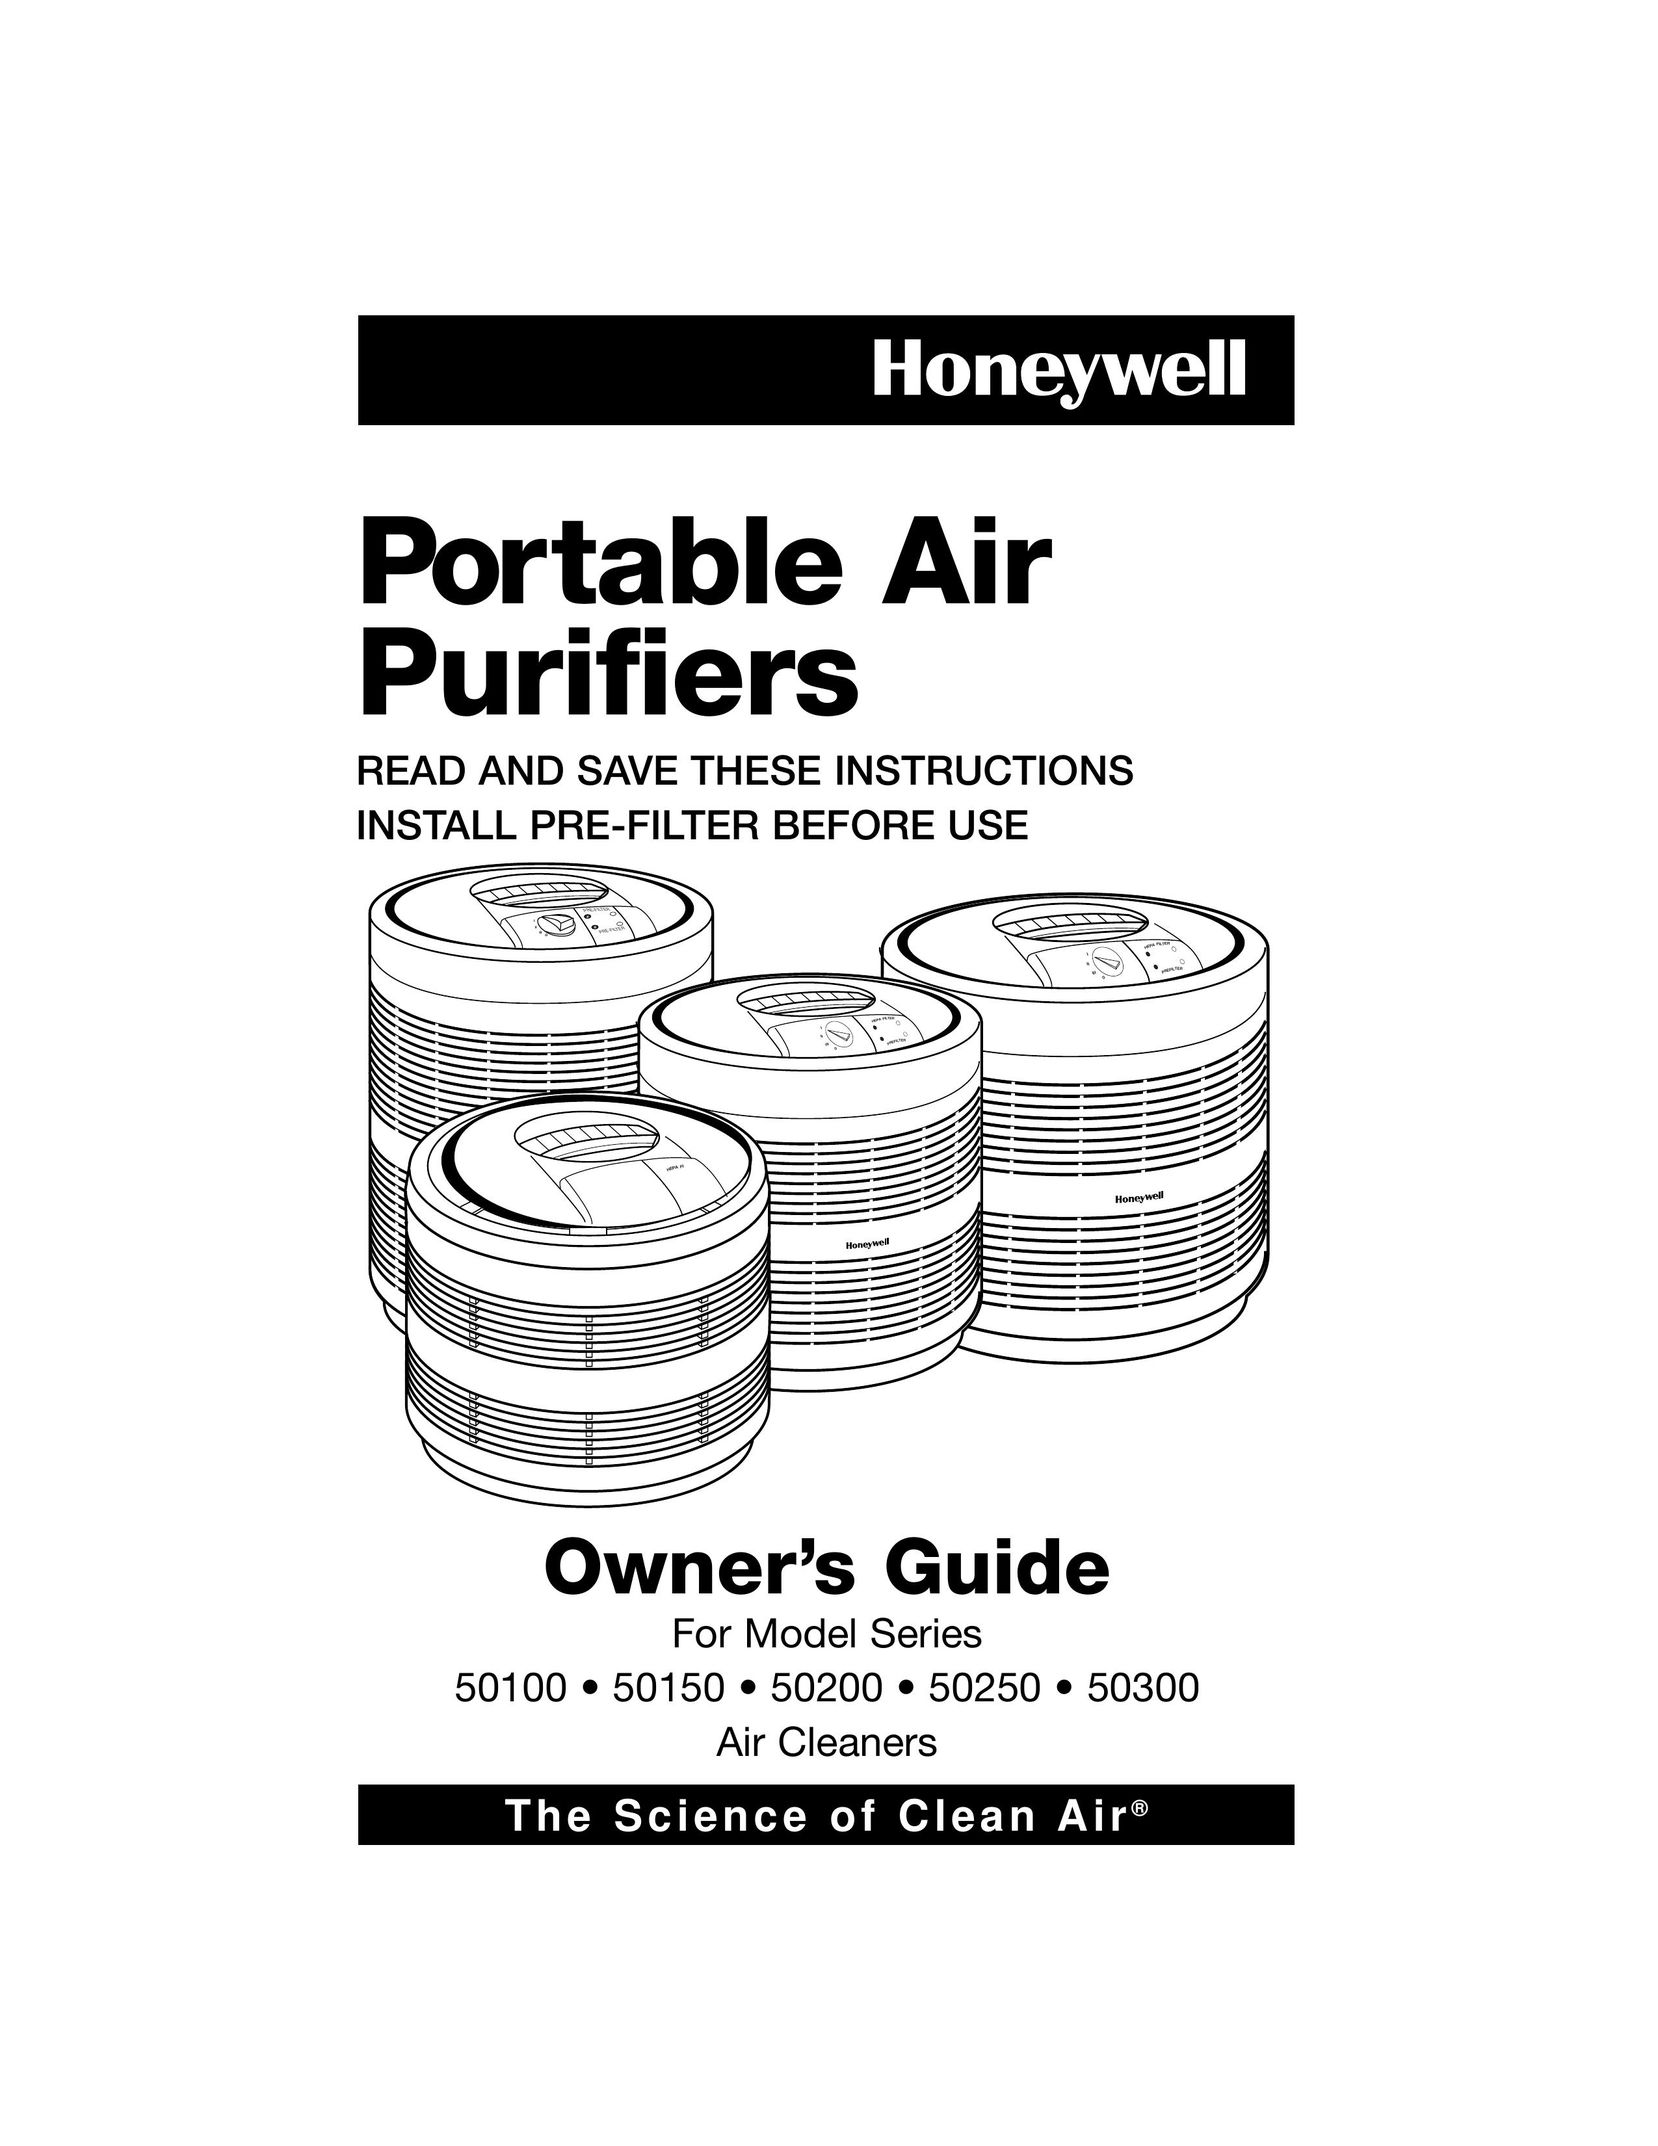 Filtera 50300 Air Cleaner User Manual